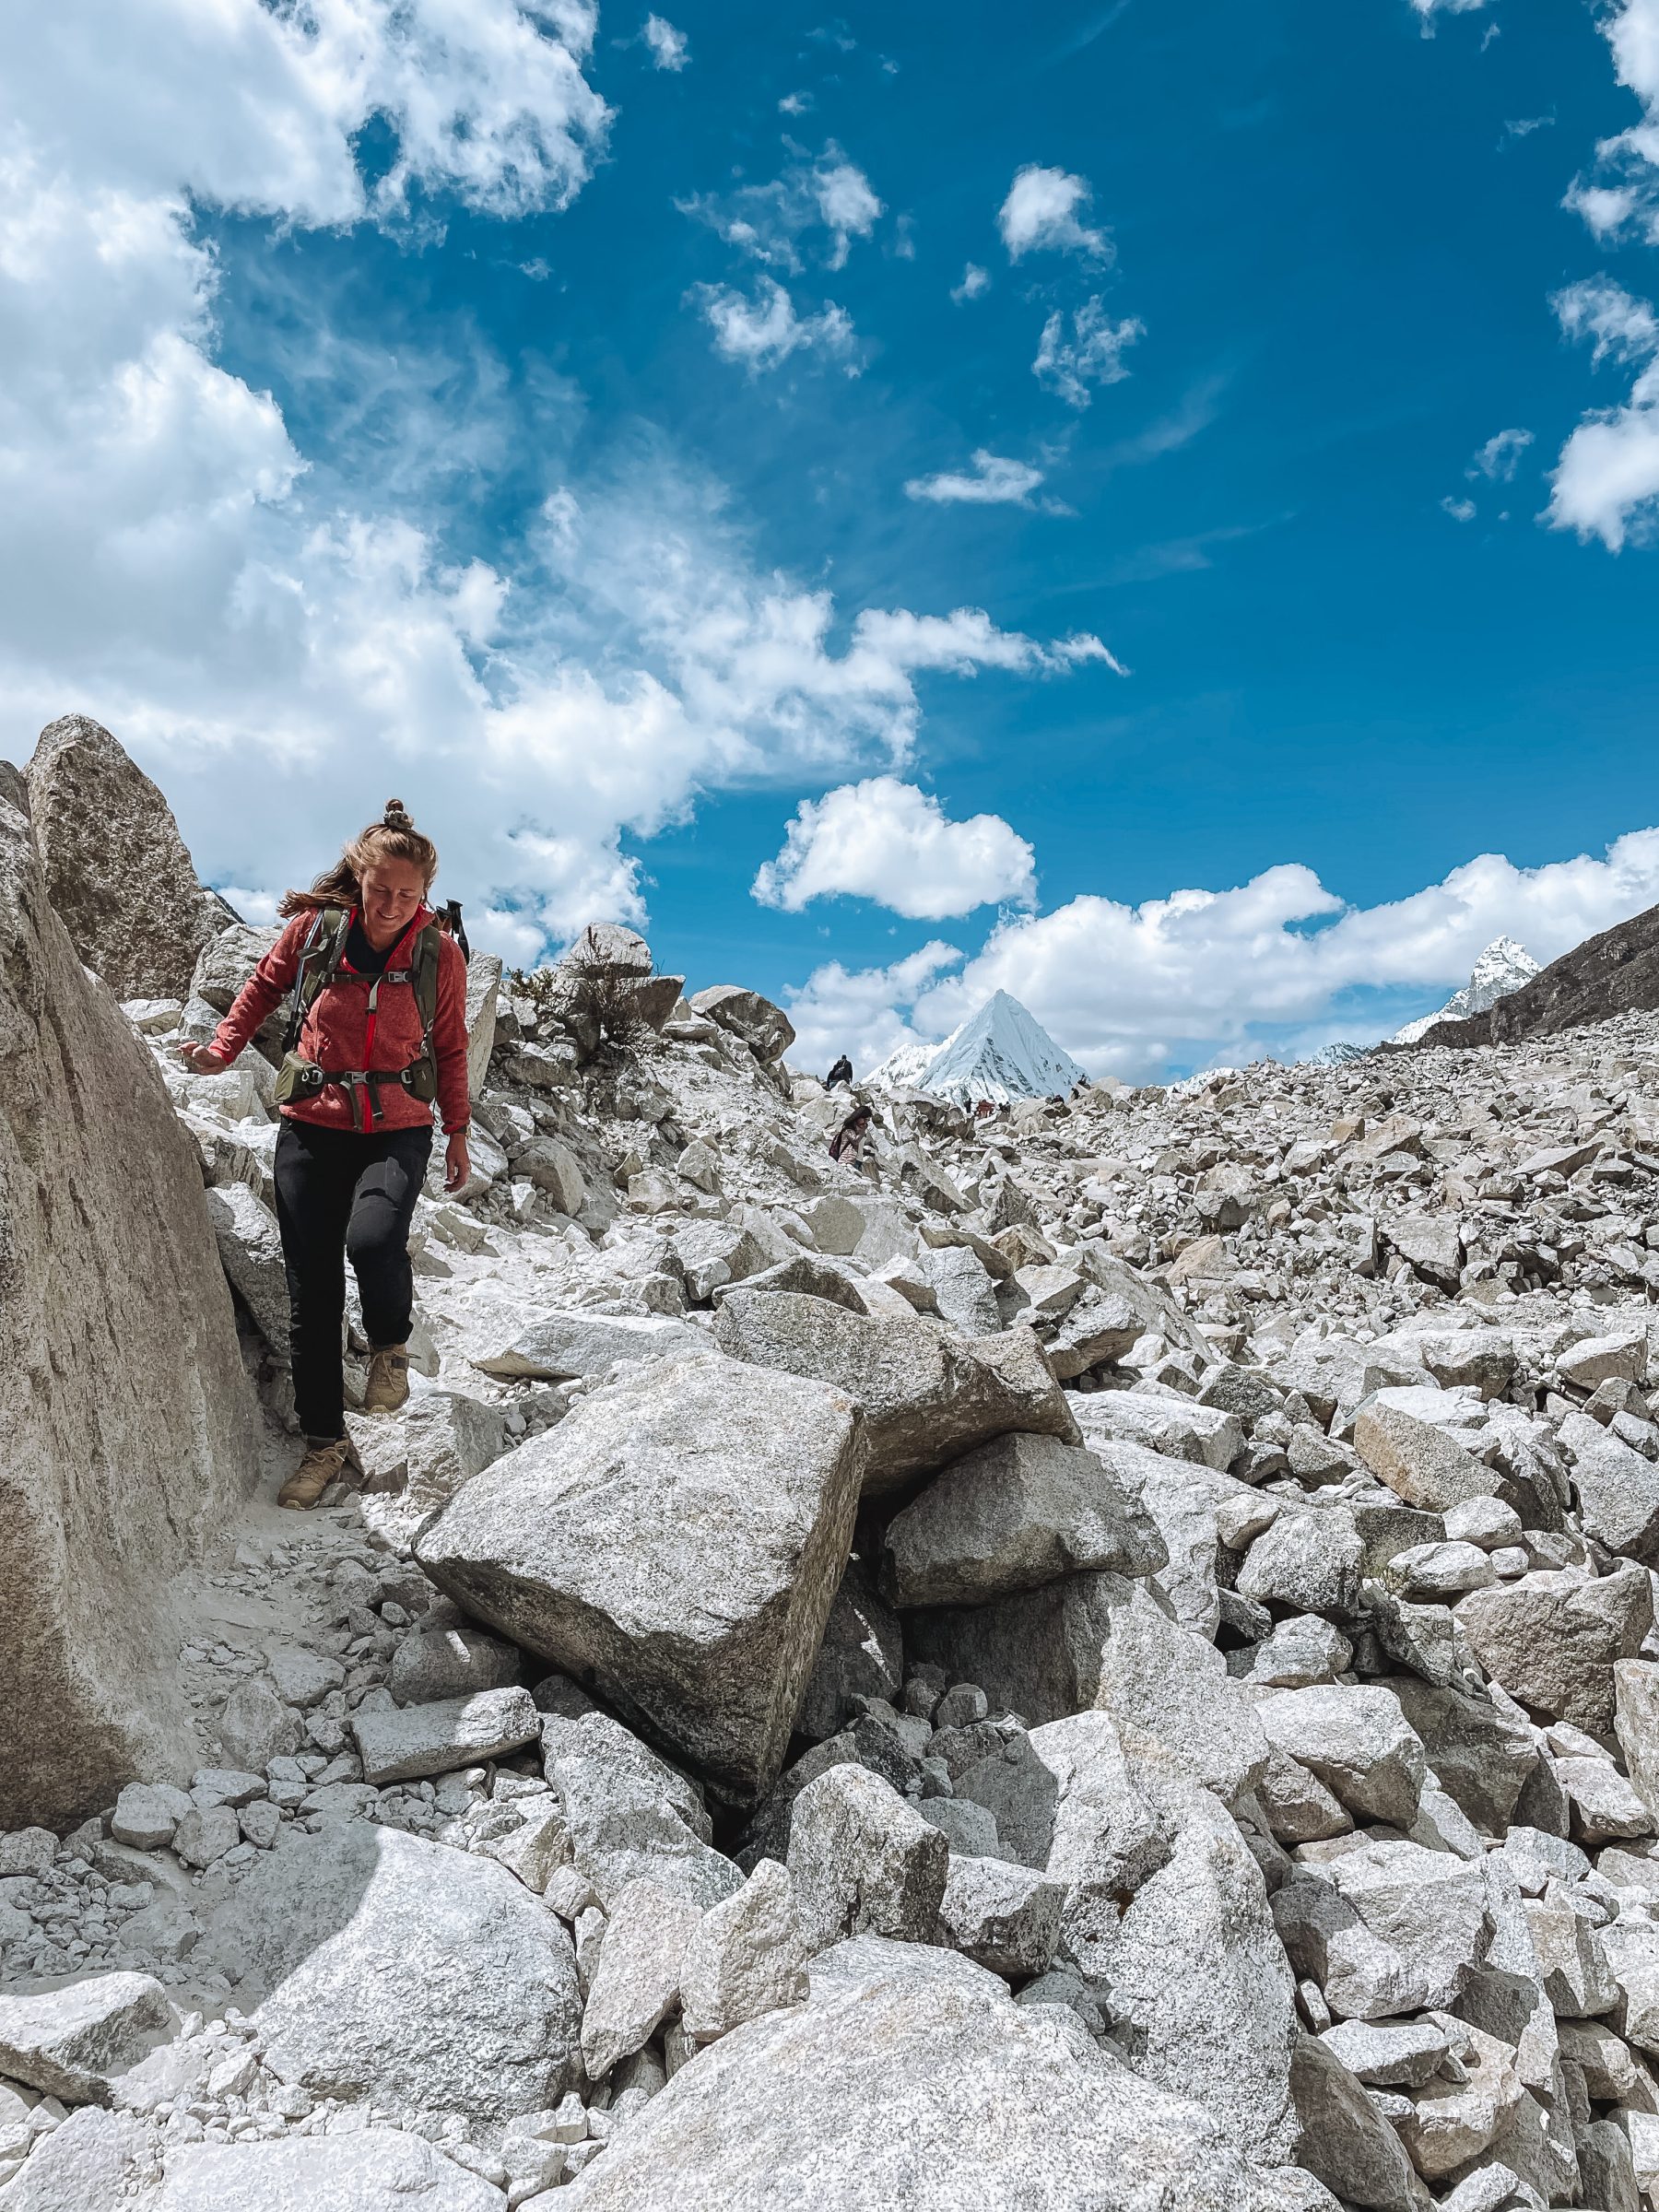 La caminata corta, pero no siempre fácil, sobre y entre grandes rocas | Senderismo en Huaraz